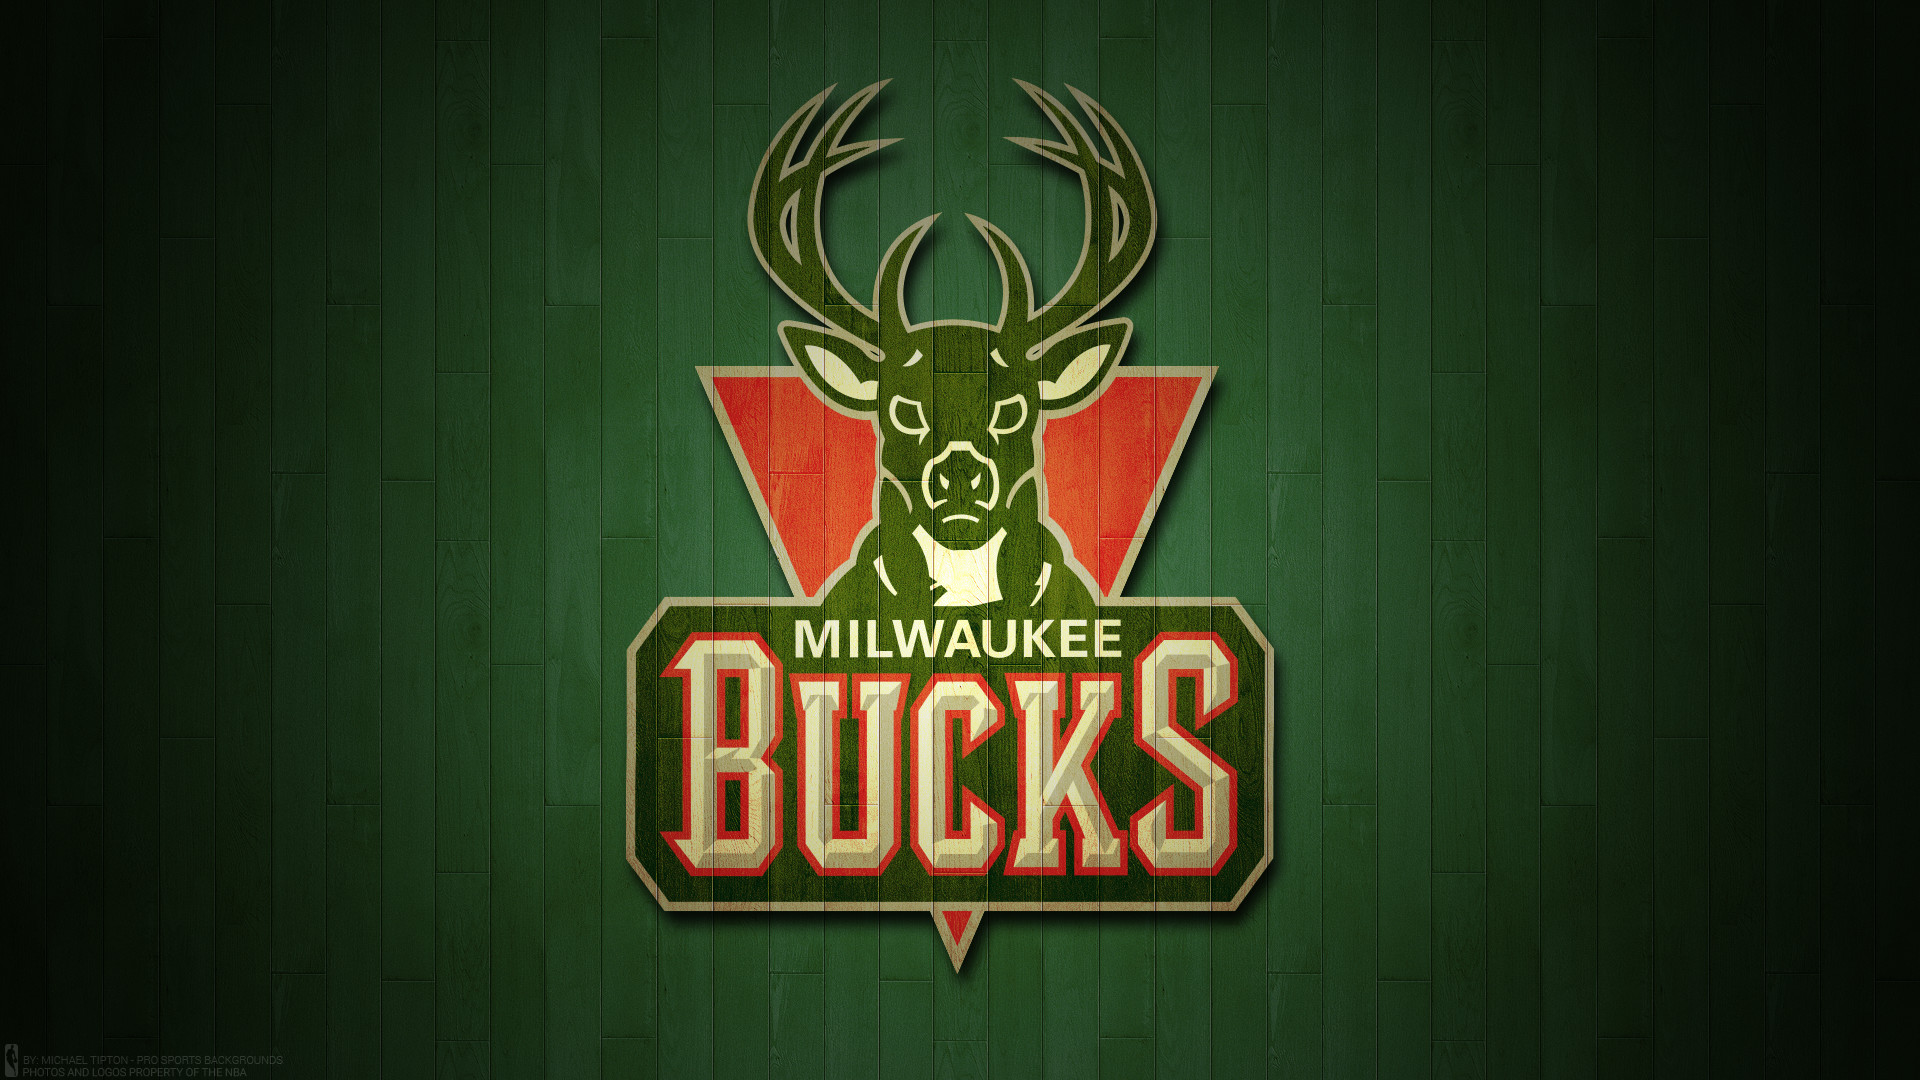 1920x1080 Milwaukee Bucks 2017 nba basketball logo wallpaper pc desktop computer